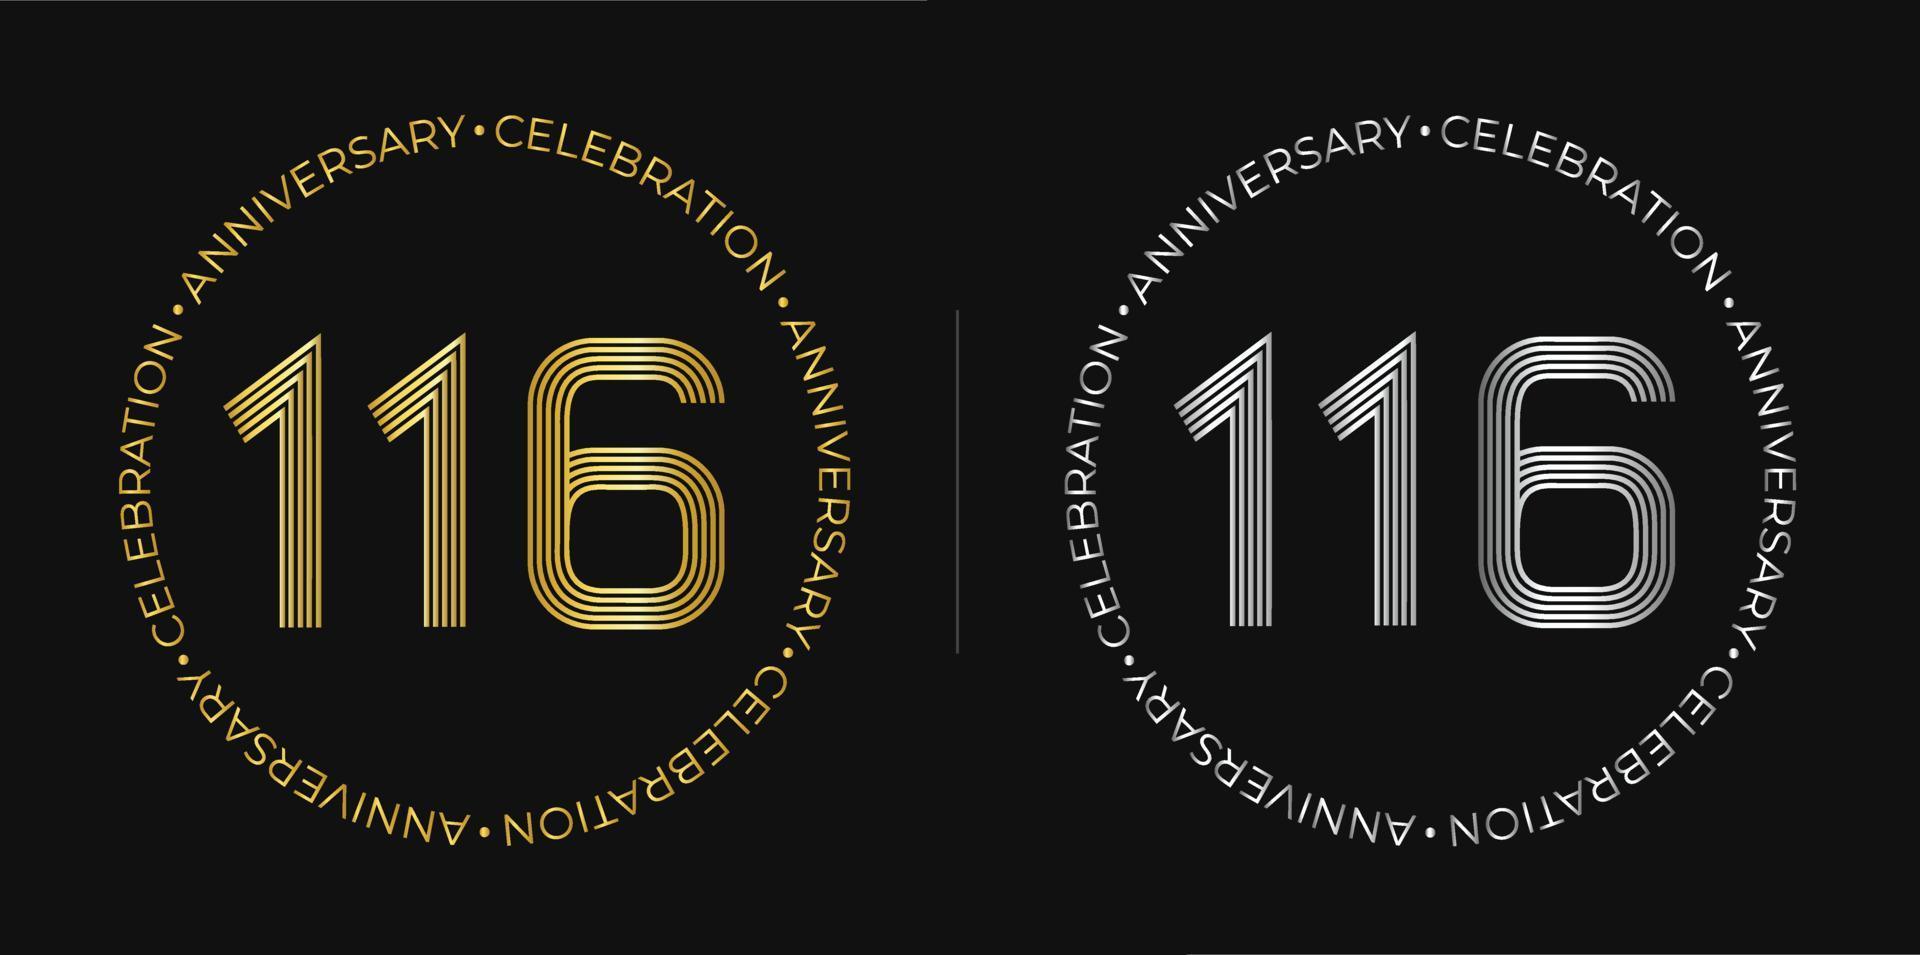 116 cumpleaños. banner de celebración de aniversario de ciento dieciséis años en colores dorado y plateado. logo circular con diseño de números originales en líneas elegantes. vector